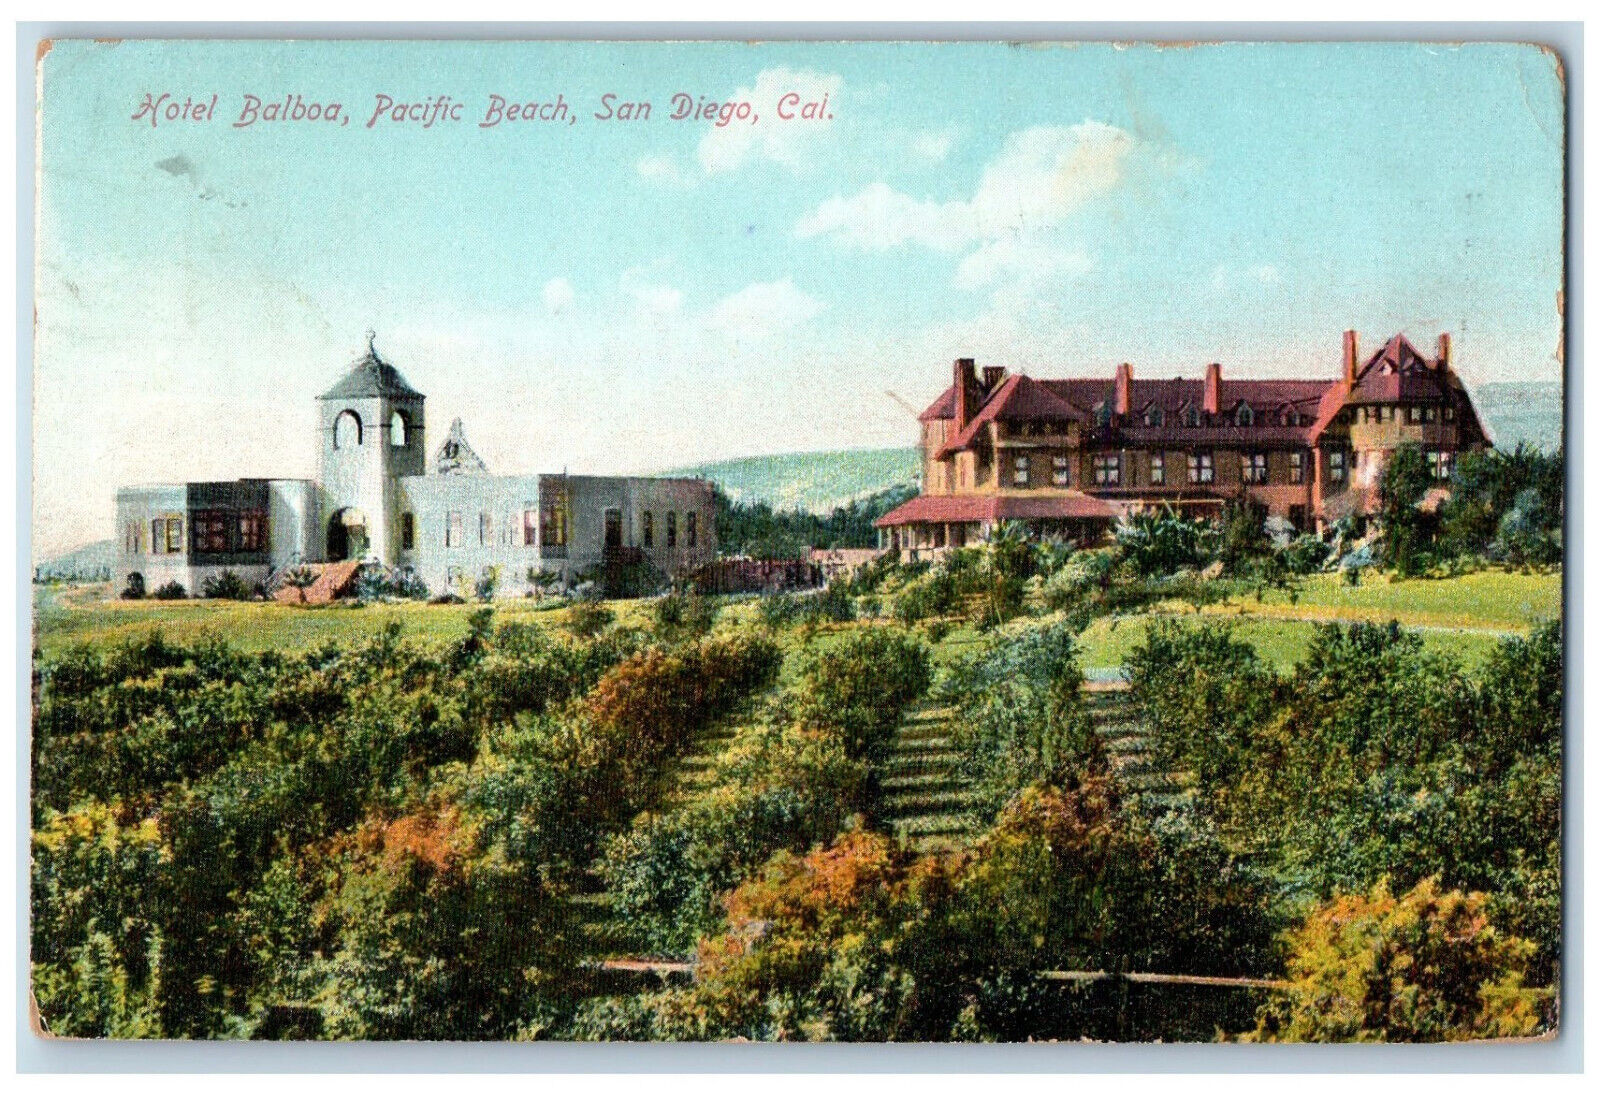 1911 Hotel Balboa Pacific Beach Garden San Diego California CA Antique Postcard